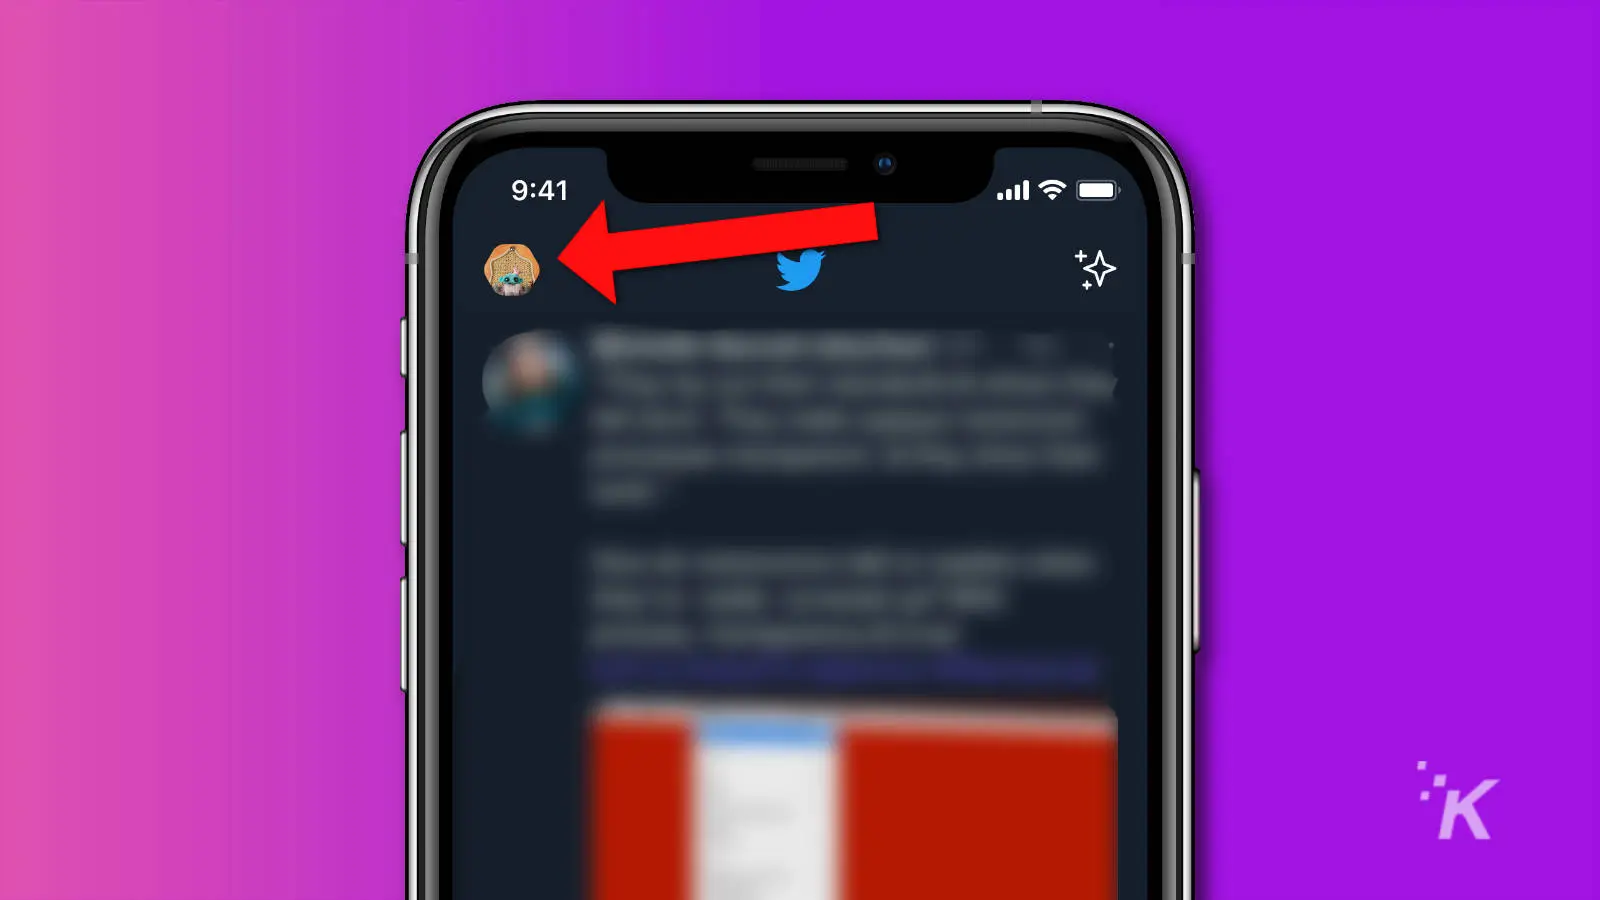 captura de pantalla de la aplicación Twitter mostrando dónde está el icono de perfil